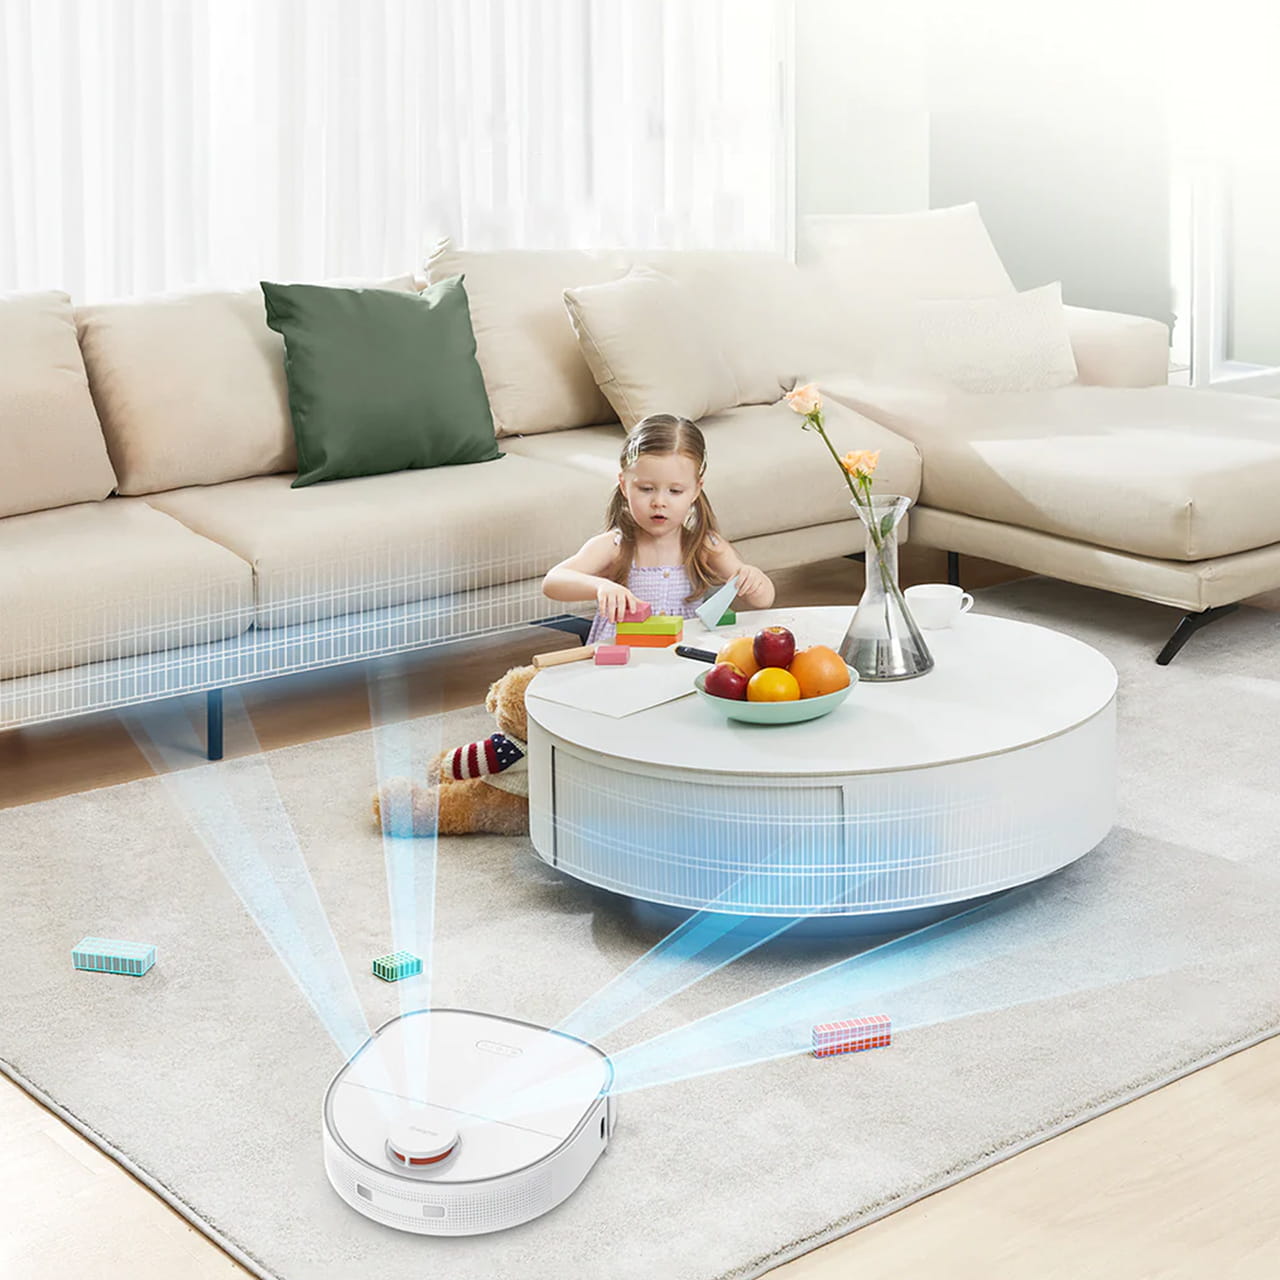 Dreame Bot W10 оснащён лазерной системой навигации на основе лидара и ориентируется в квартире даже в полной темноте